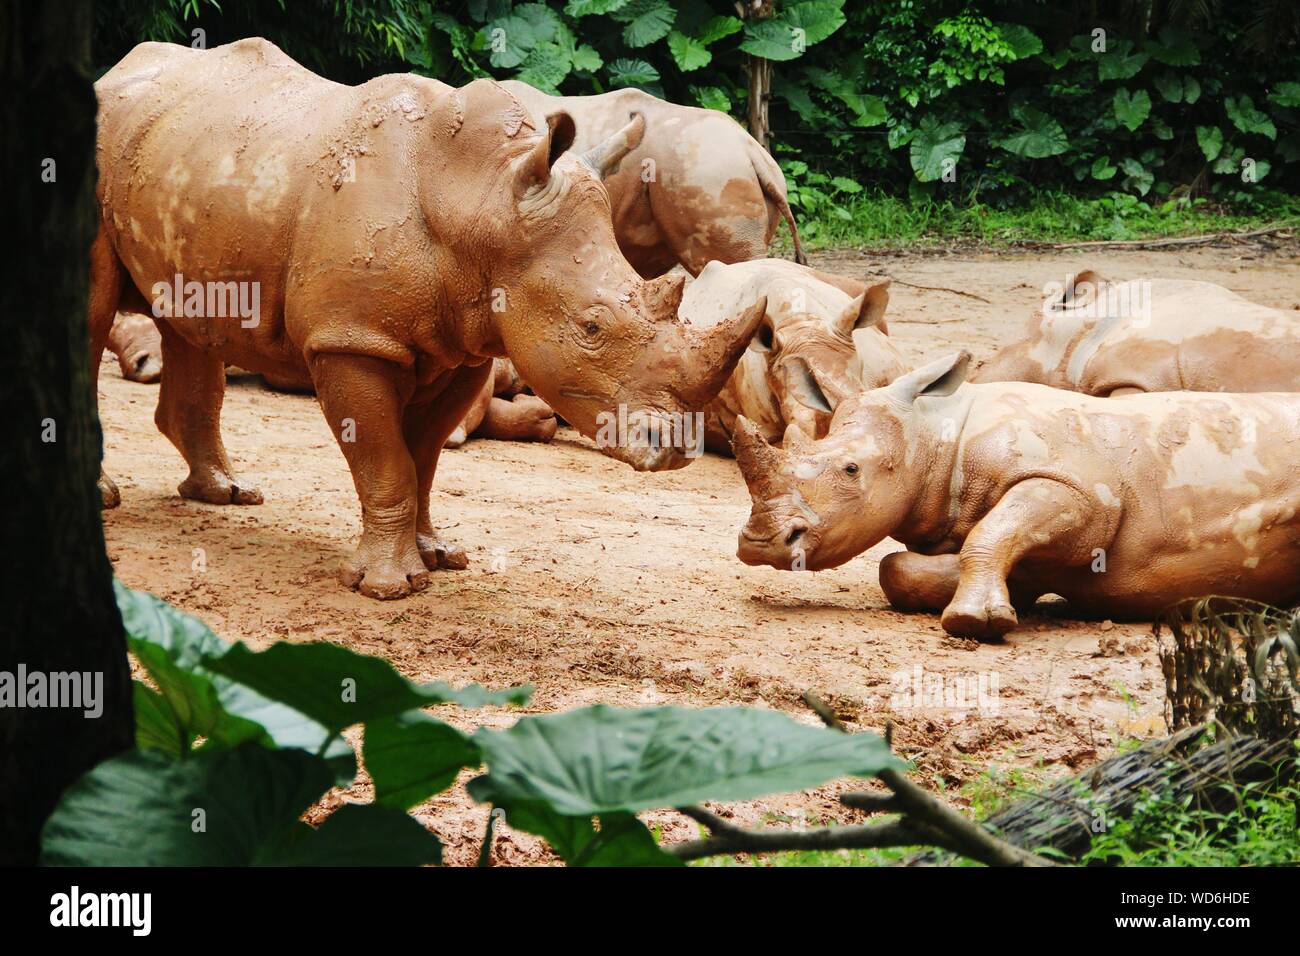 Rhinoceroses At Zoo Stock Photo